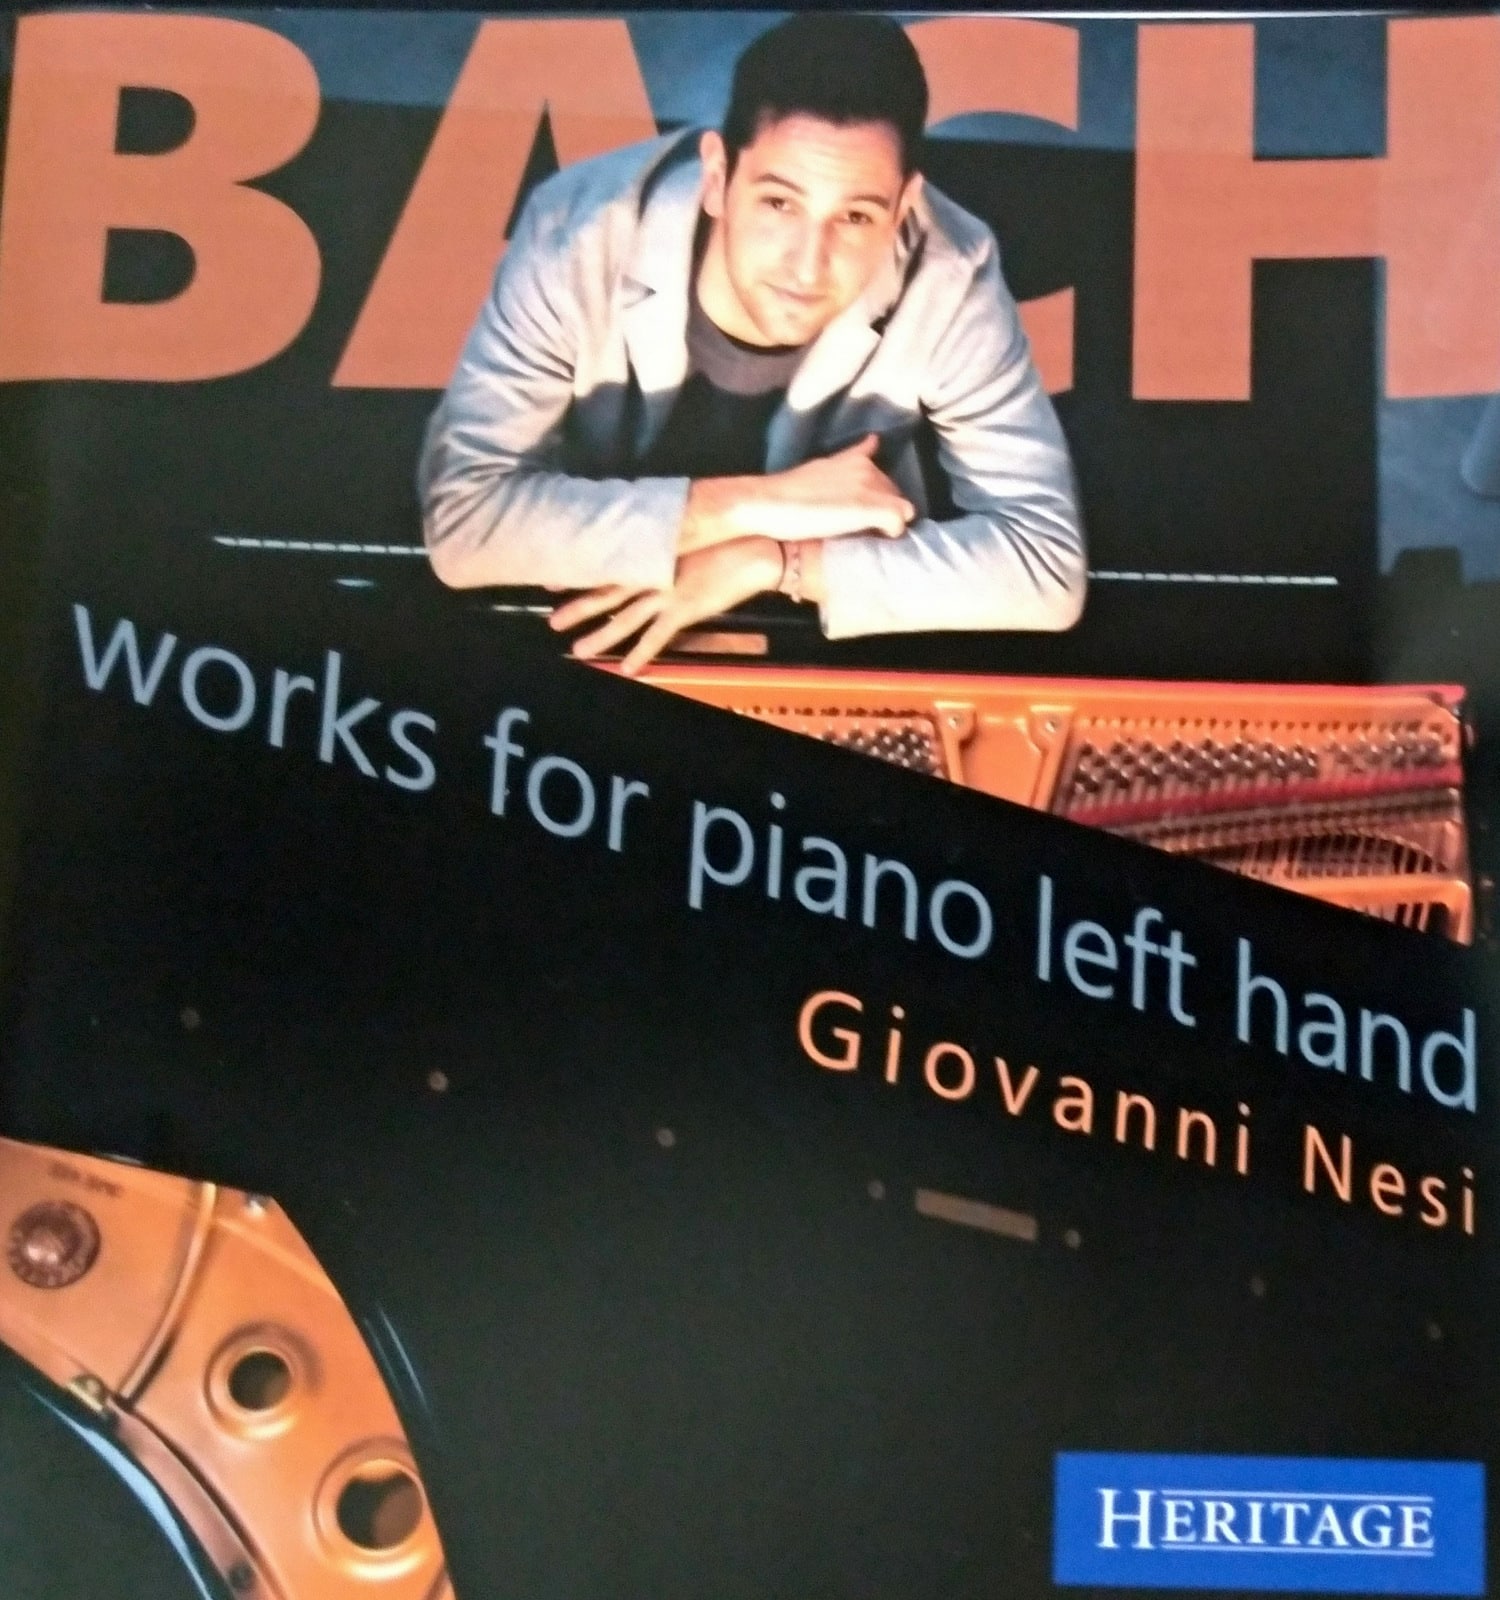 Il talentuoso pianista Giovanni Nesi